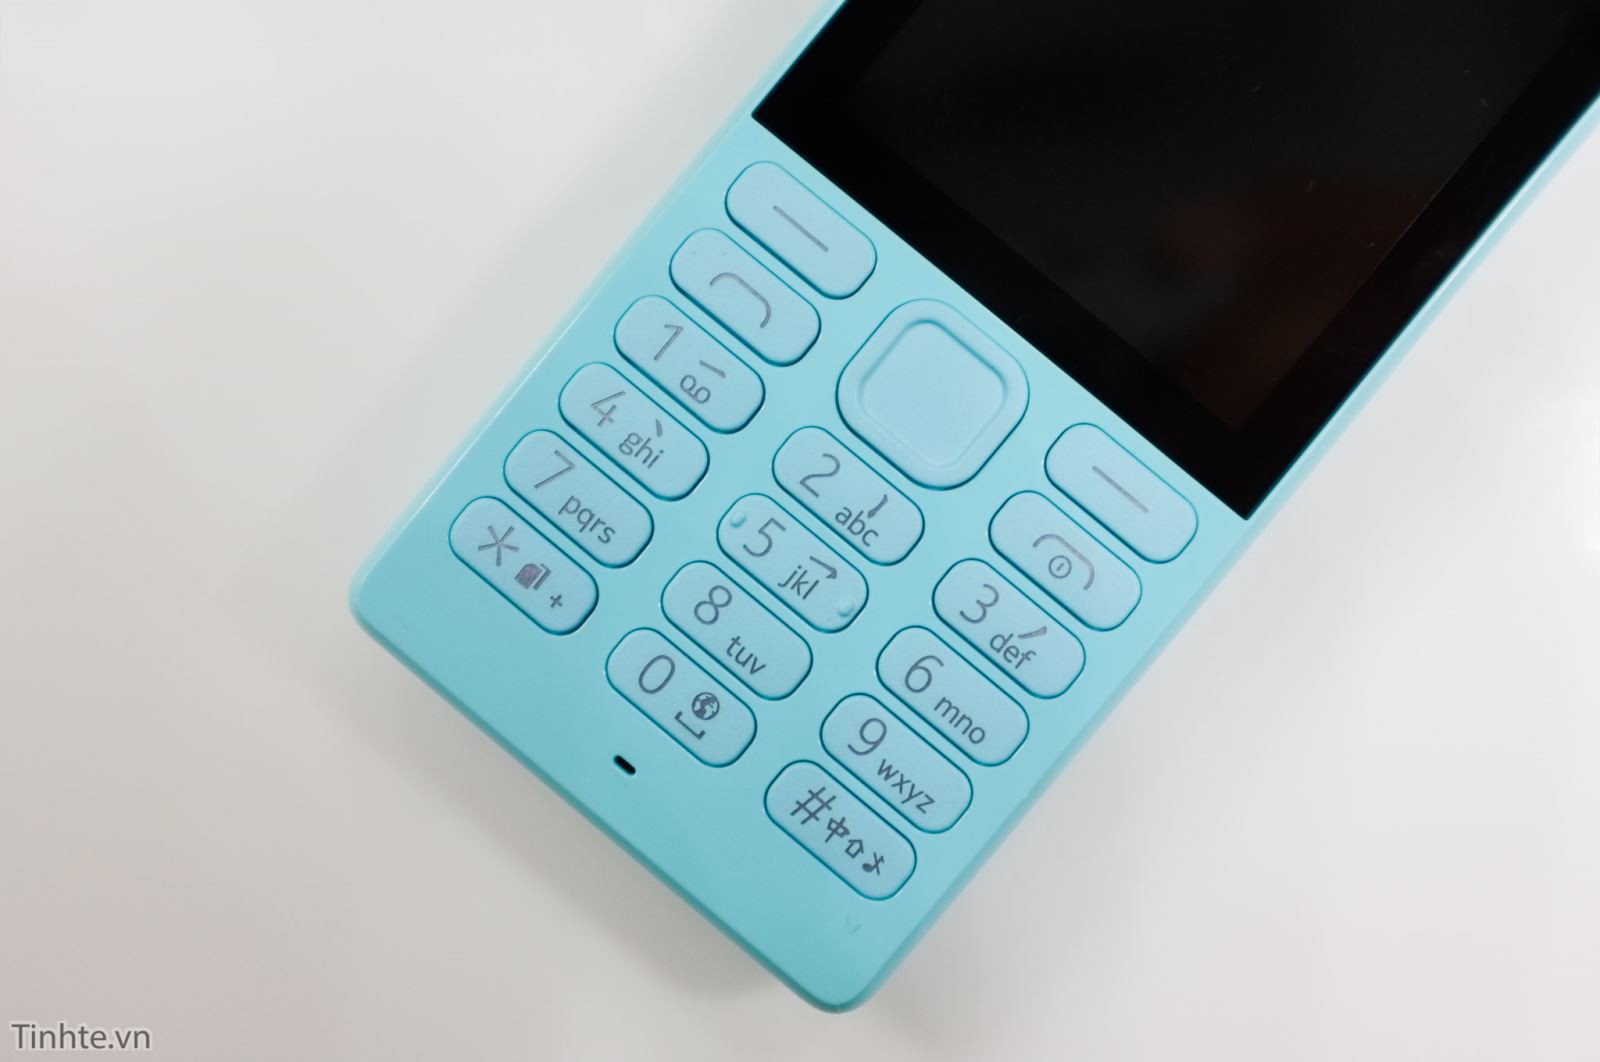 Cận cảnh chiếc Nokia 216 phiên bản màu xanh tuyệt đẹp 1